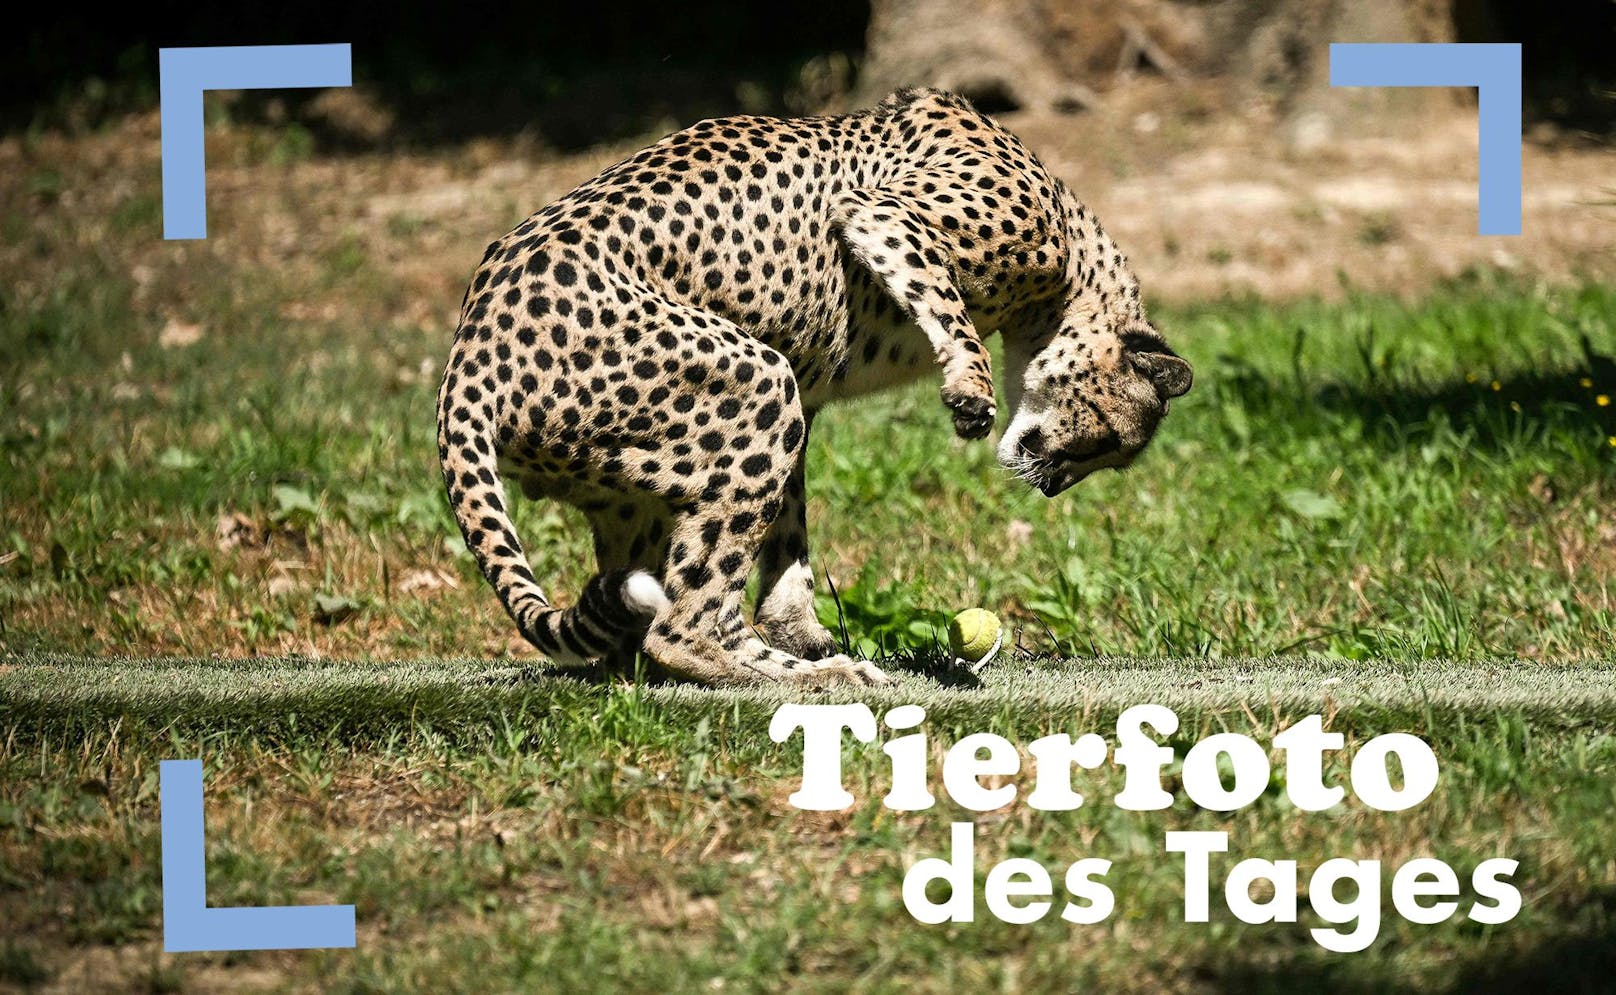 Ein besonders toller Schnappschuss ist hier von einem jungen Gepard in einem Zoo in Frankreich entstanden. Das Tier untersucht gerade den Sprint-Dummy.